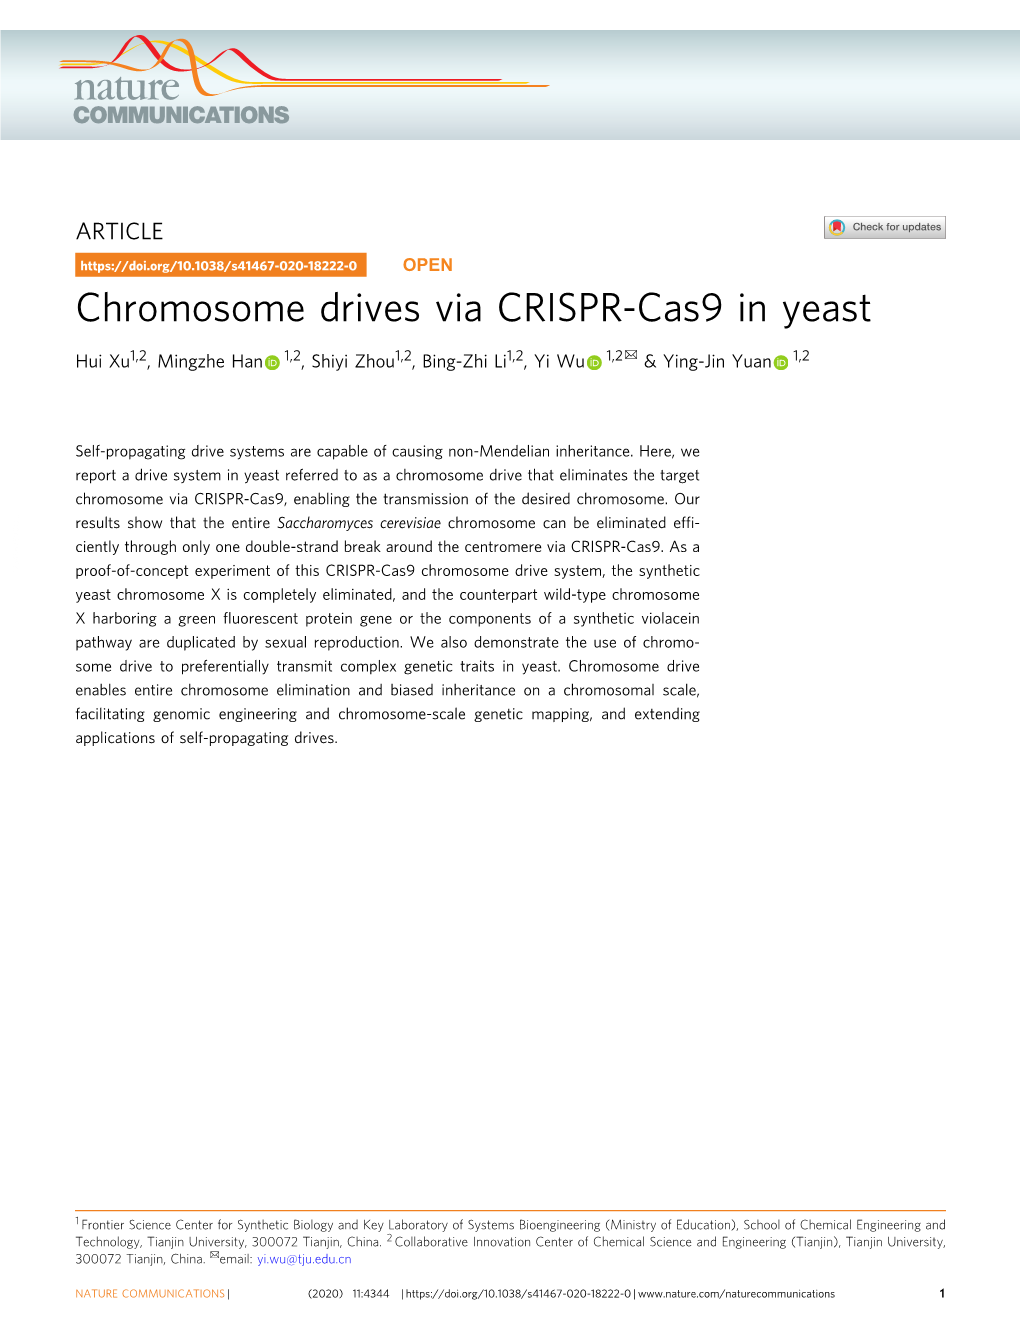 Chromosome Drives Via CRISPR-Cas9 in Yeast ✉ Hui Xu1,2, Mingzhe Han 1,2, Shiyi Zhou1,2, Bing-Zhi Li1,2,Yiwu 1,2 & Ying-Jin Yuan 1,2